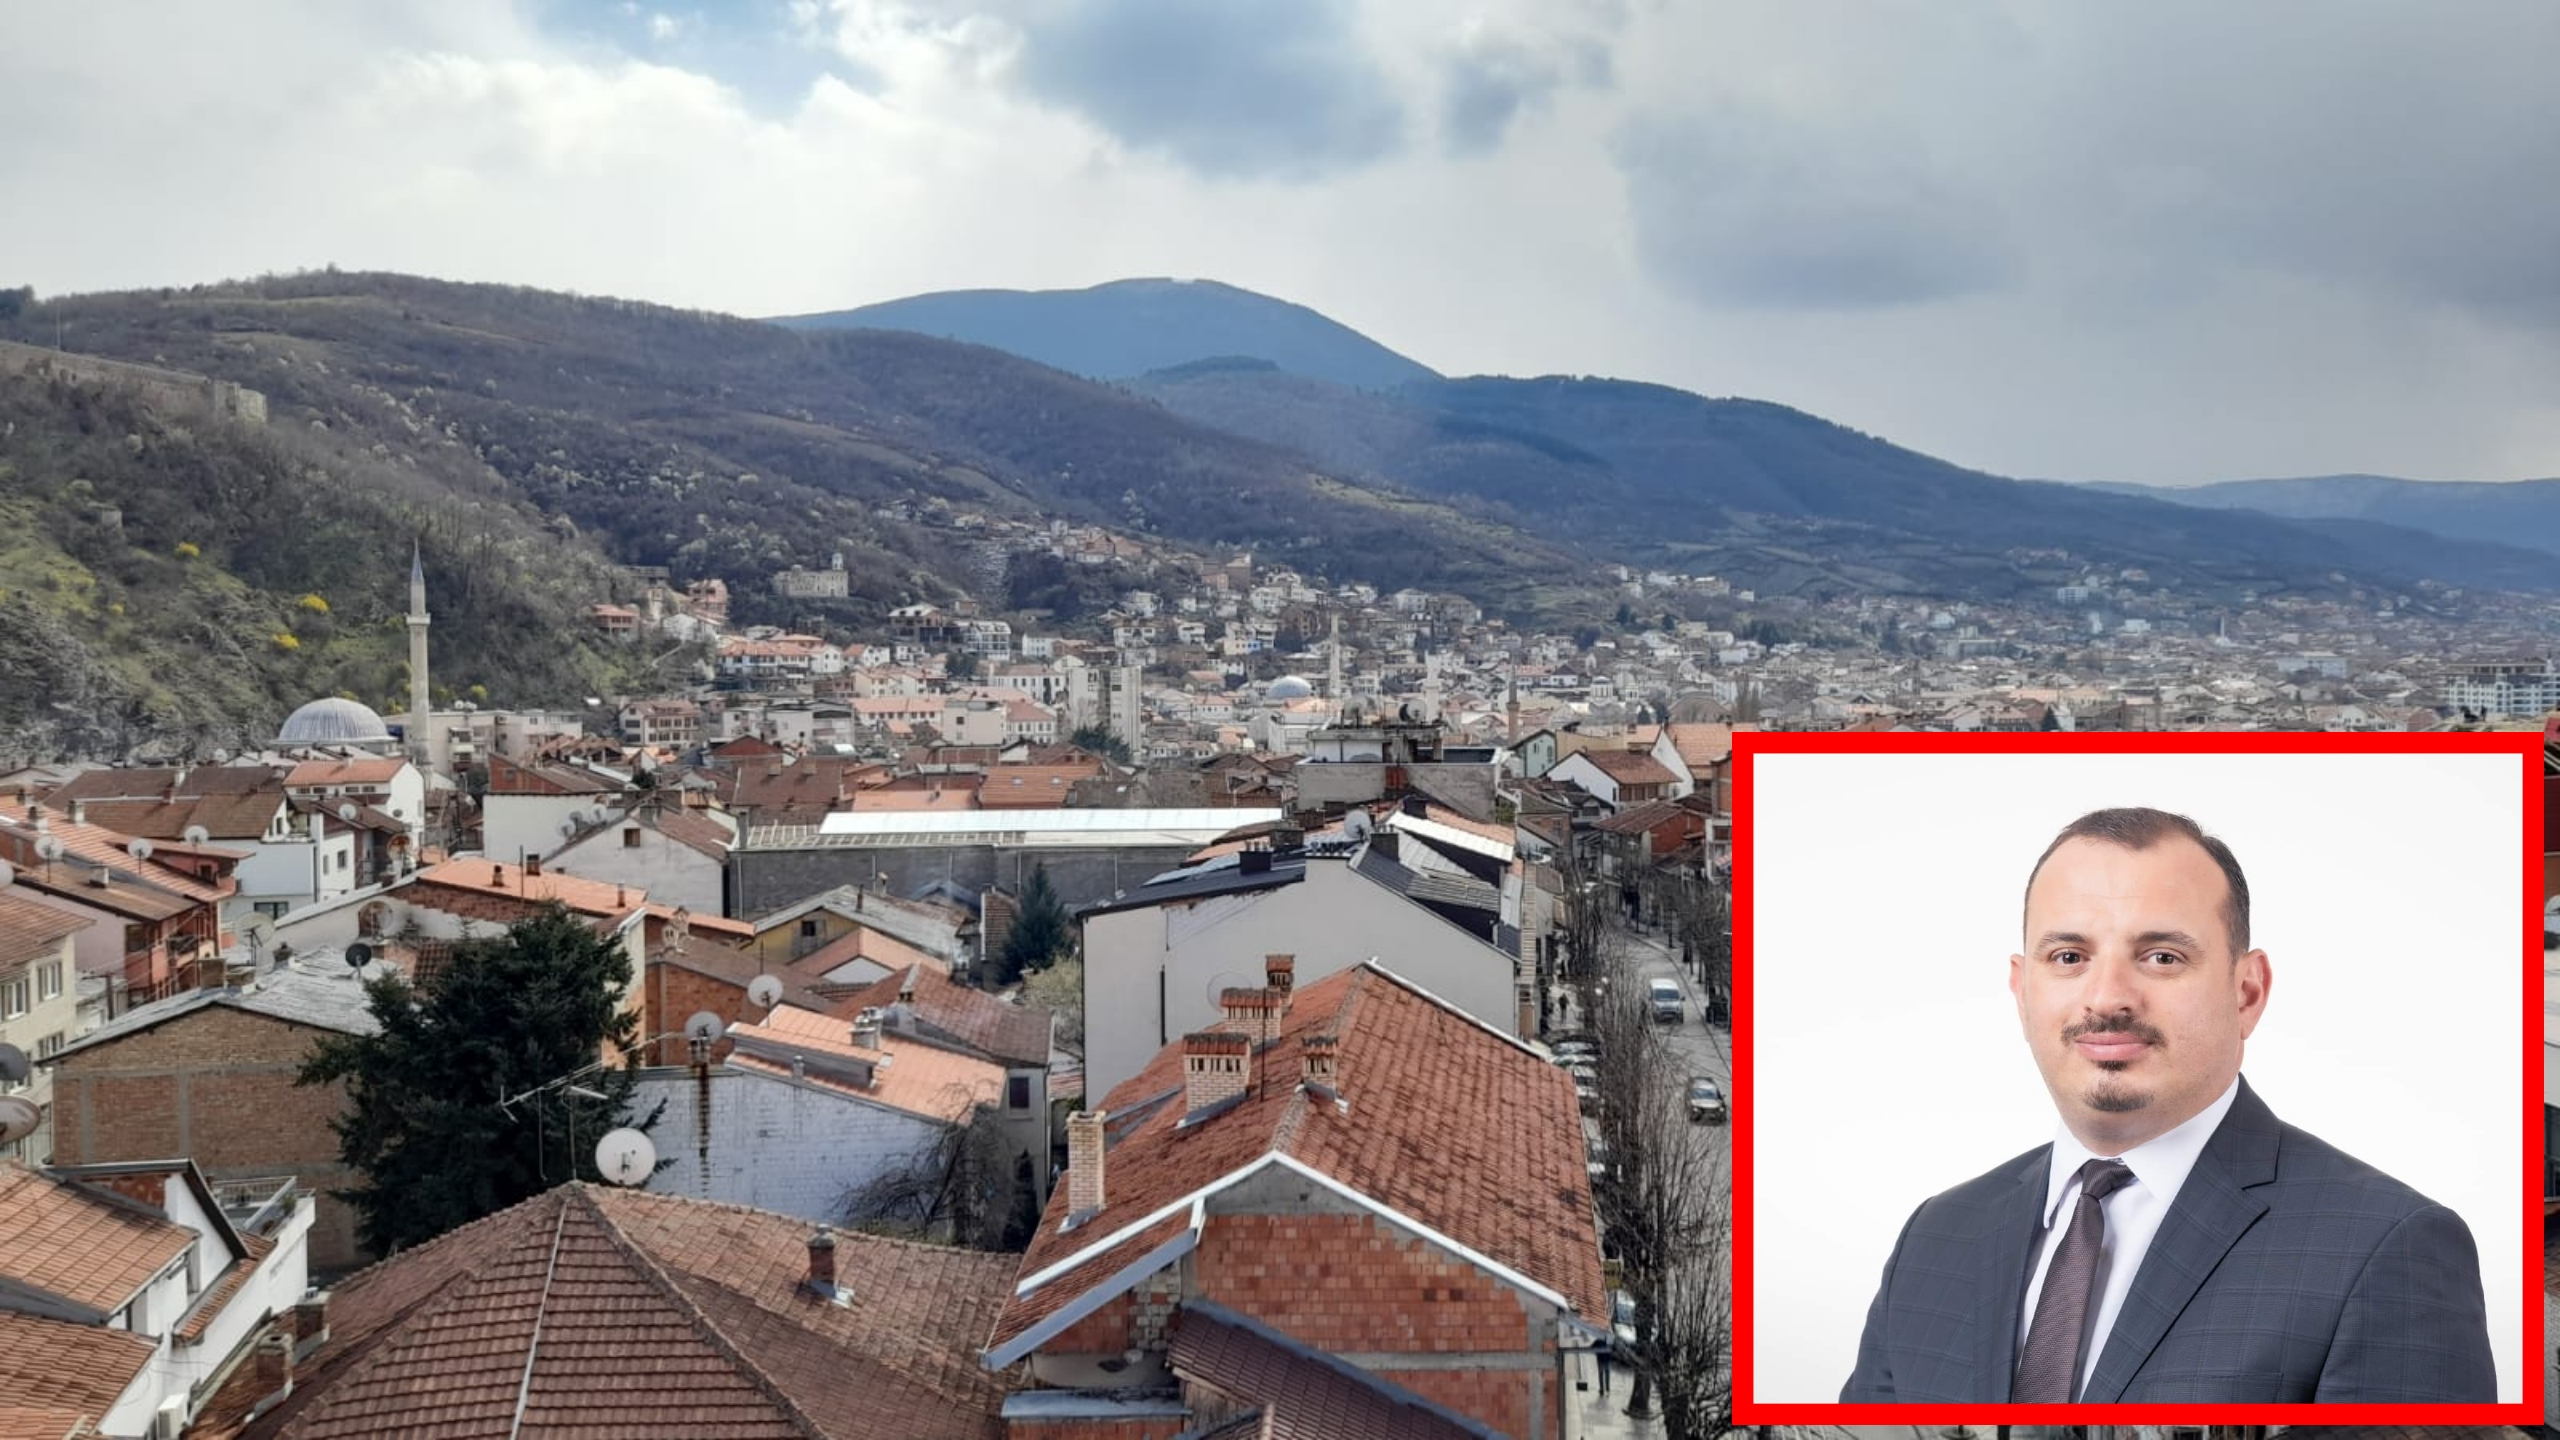 Megjithatë Komuna jep leje për rrënimin e shtëpive në zonën e dytë të mbrojtur të Prizrenit